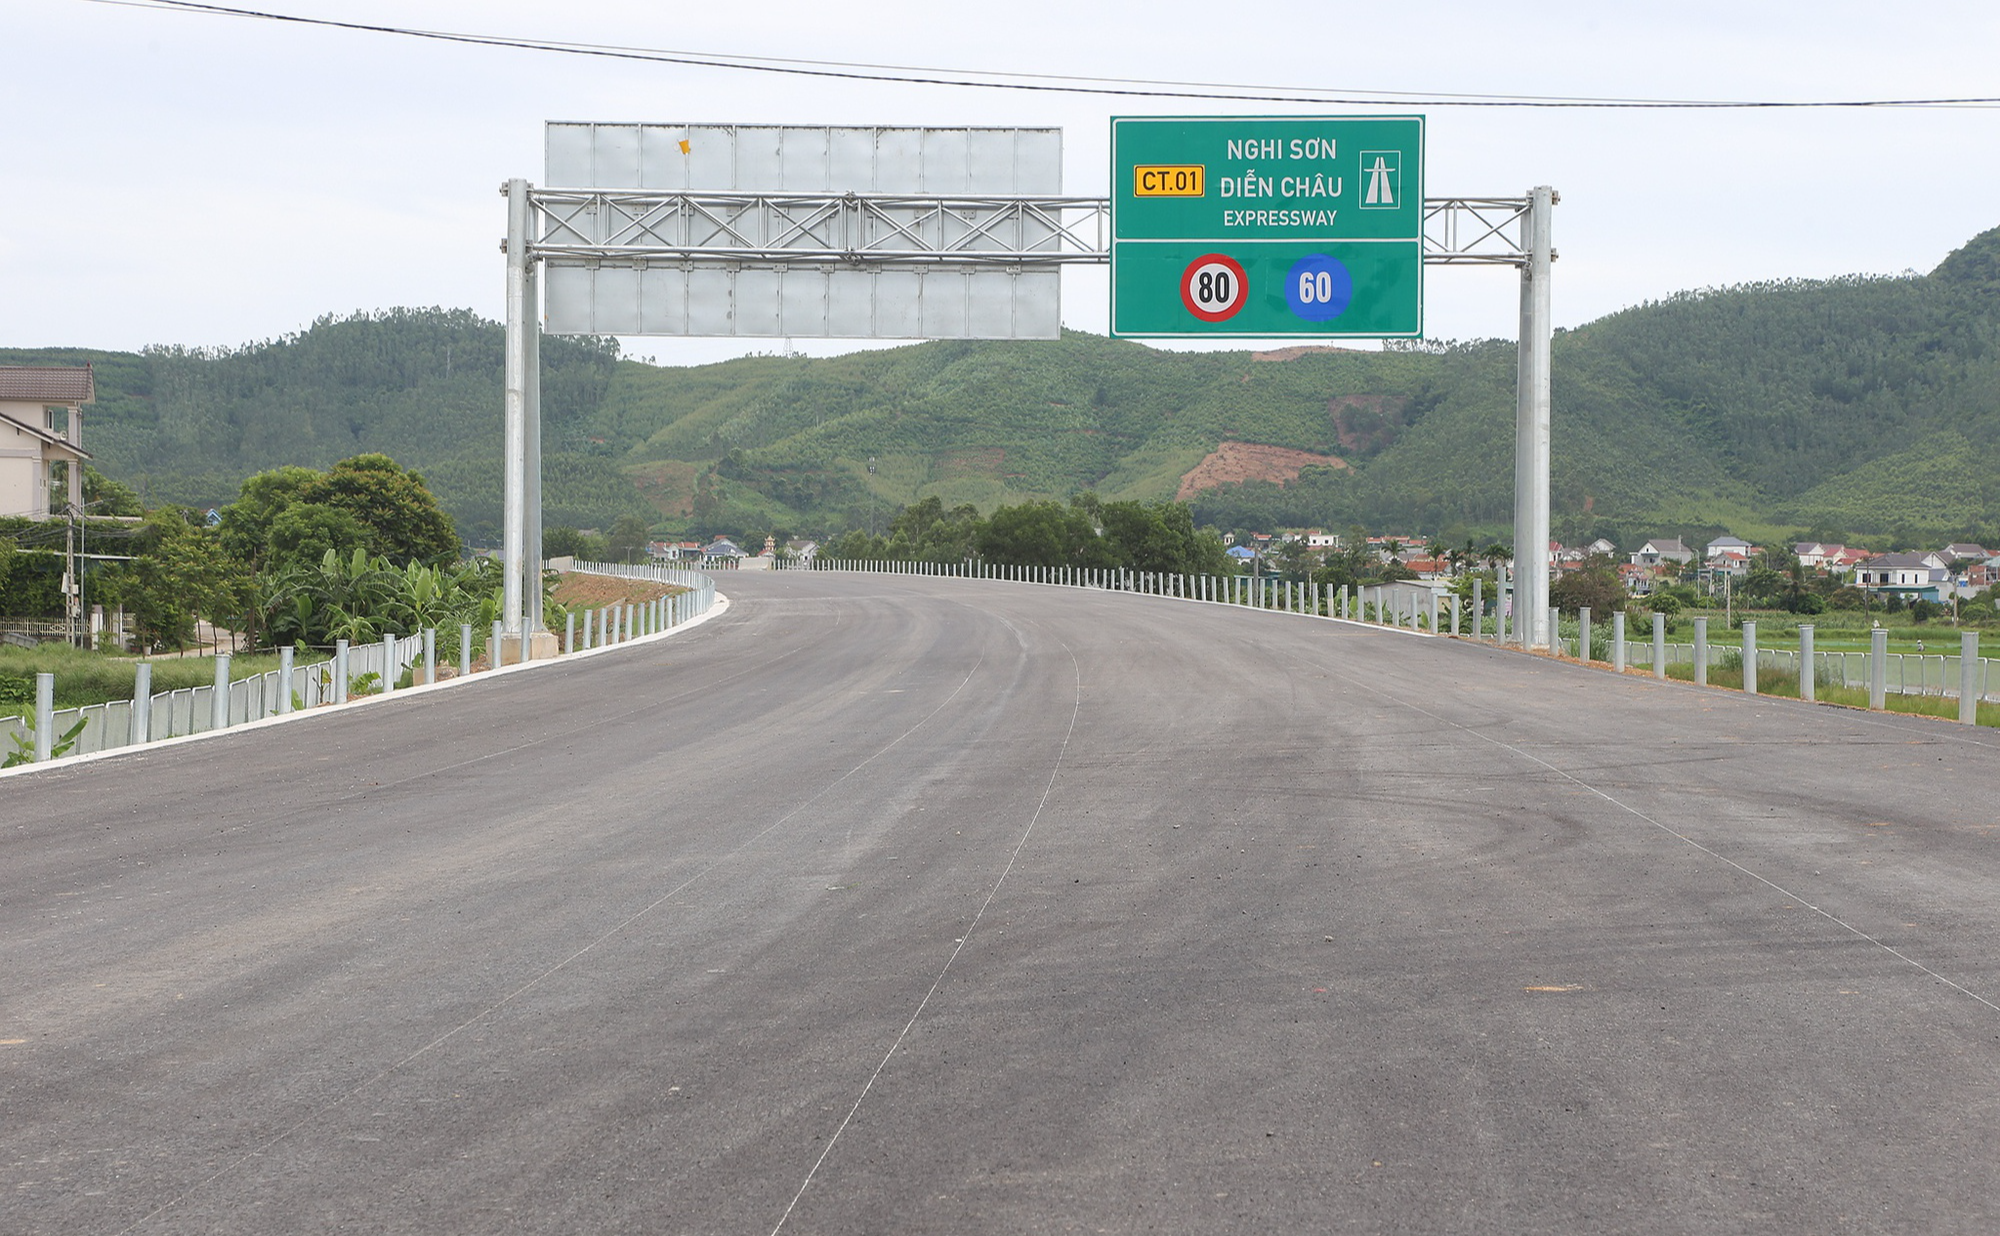 Tạm dừng khai thác một số đoạn tuyến cao tốc QL 45 - Nghi Sơn và Nghi Sơn - Diễn Châu - Ảnh 1.